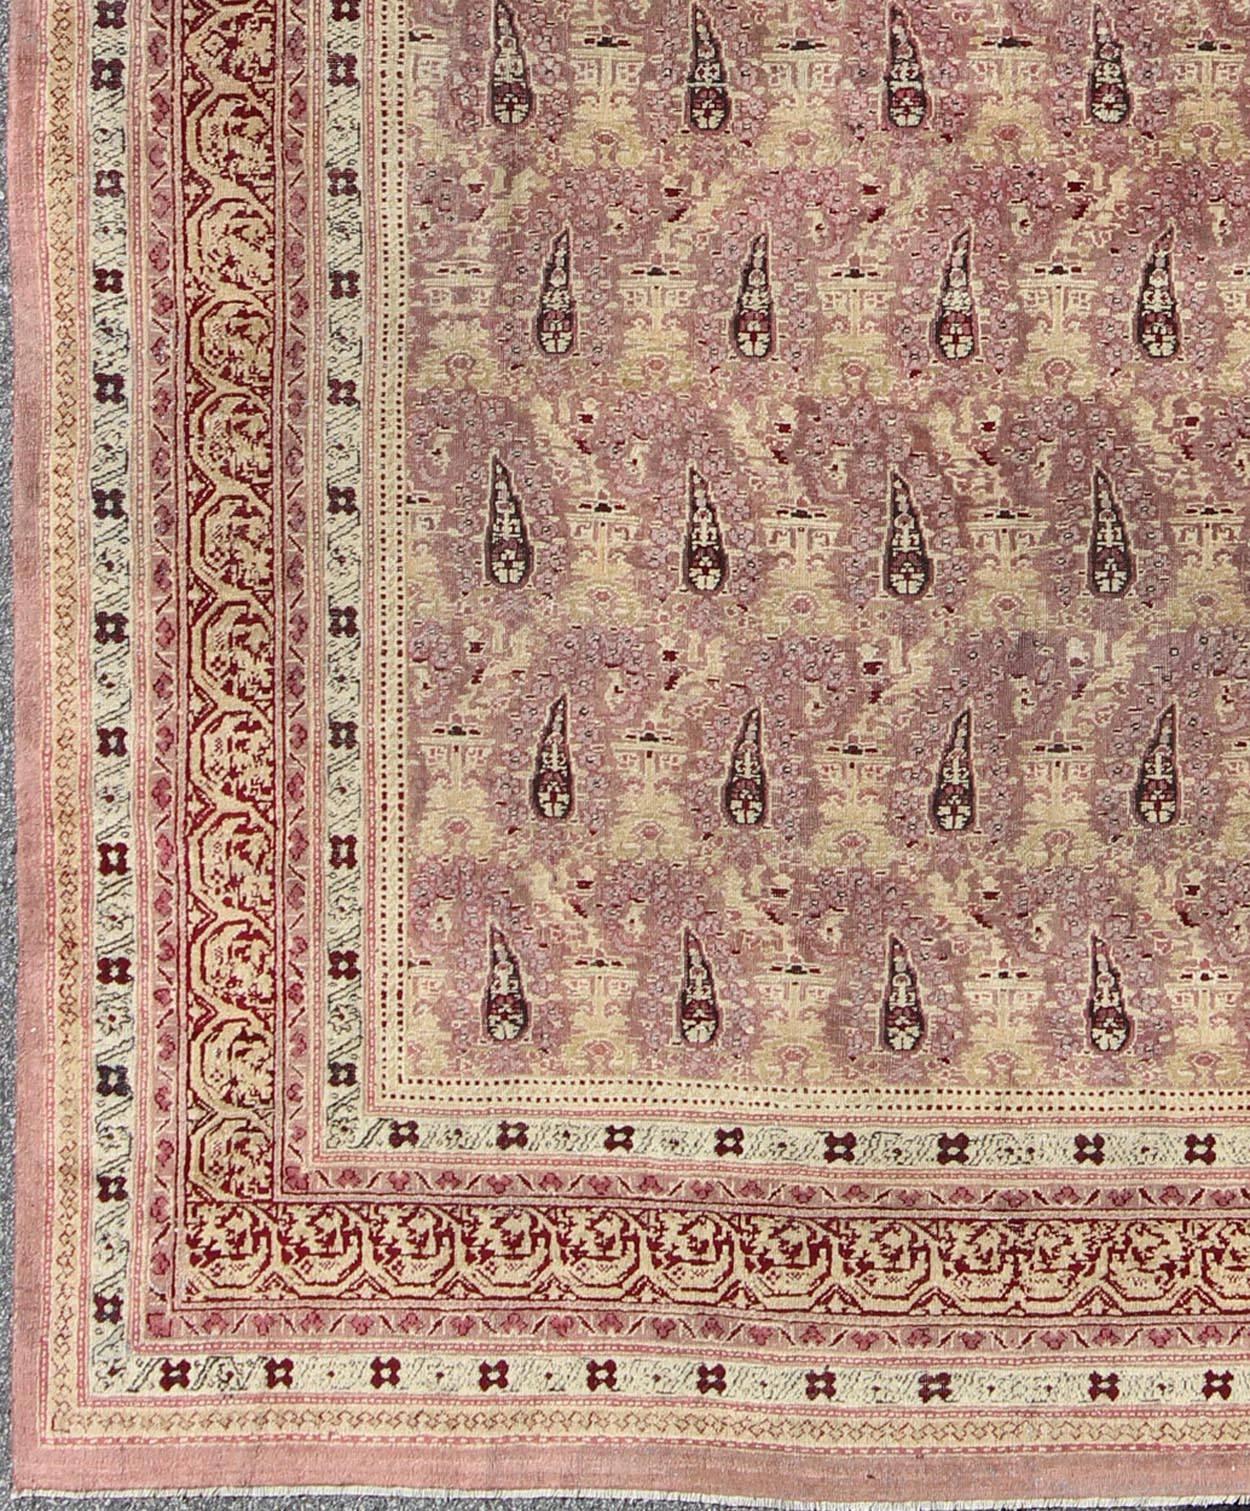  Antiker indischer Amritsar-Teppich mit  Allover-Paisleymuster in Elfenbein, Rosa, Lavendel, Lila, Creme, Hellgelb und Rot. Antiker indischer Amritsar-Teppich, Keivan Woven Arts/ Teppich/ EBD-1001, Herkunftsland / Typ: Indien / Amritsar, um